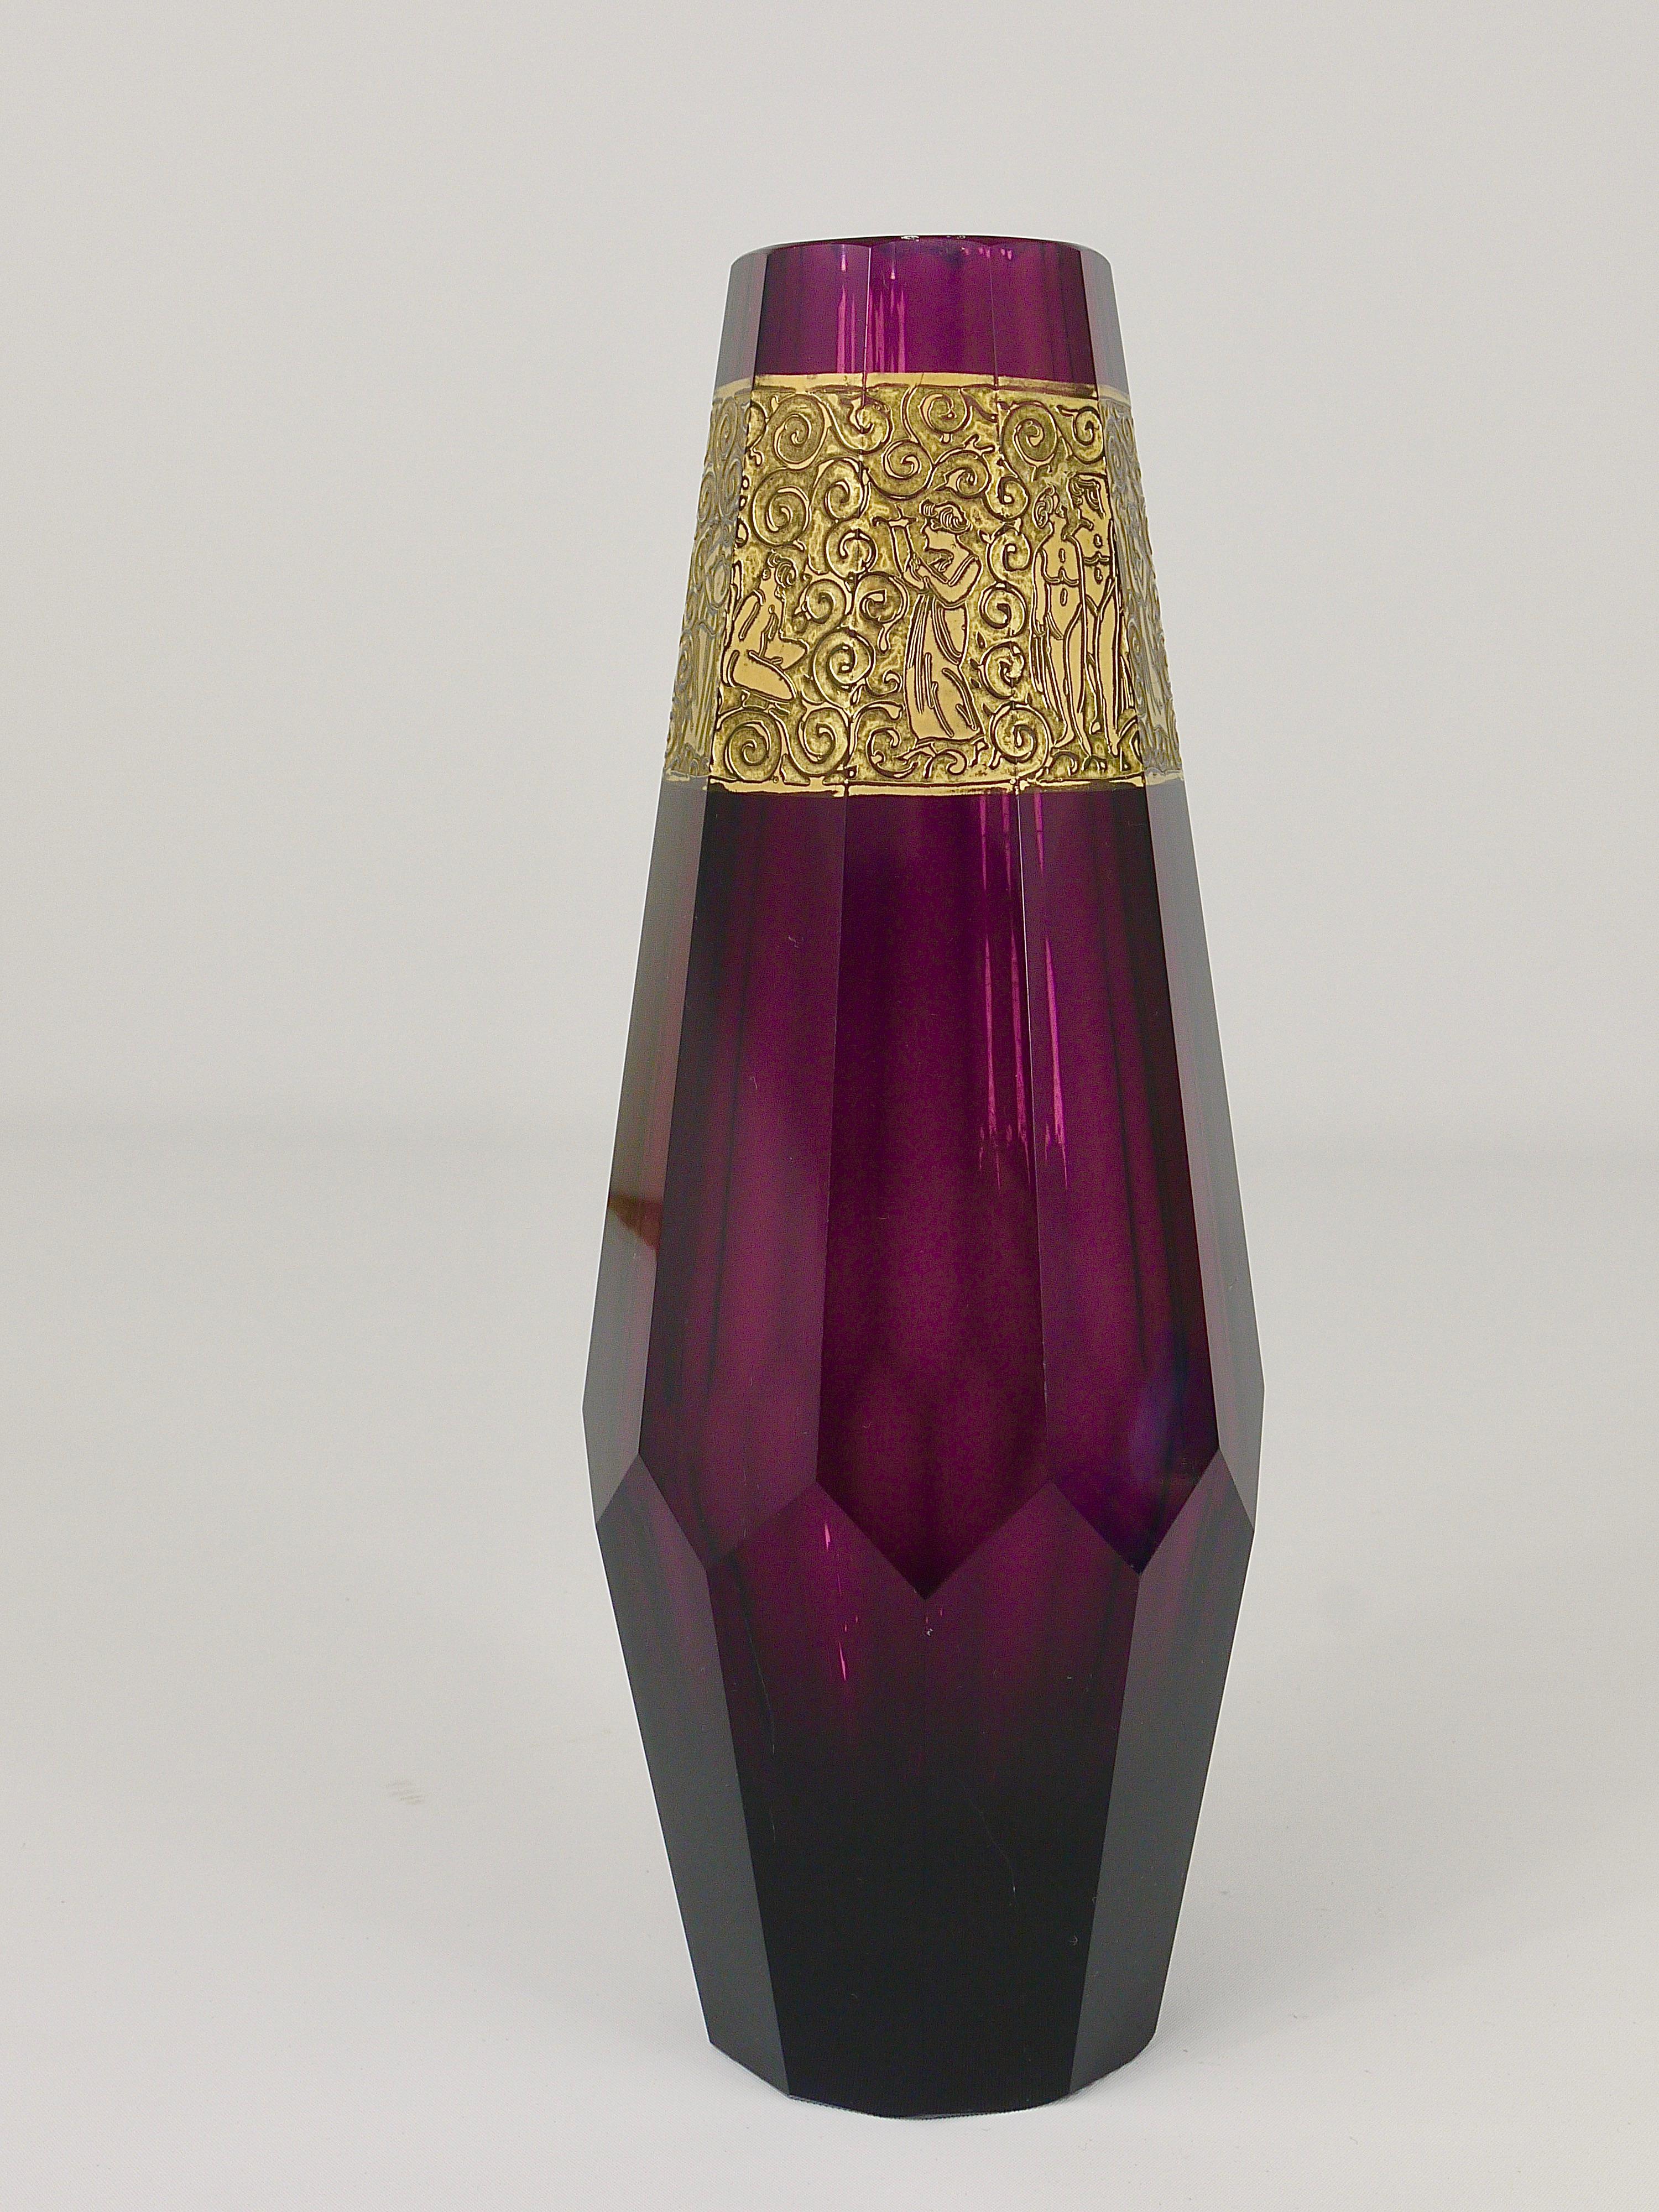 Magnifique vase décoratif en cristal d'Améthyste soufflé et poli à la main, de style Art Déco, avec un joli motif doré. Daté d'environ 1920, fabriqué par Ludwig Moser Glassworks Karlsbad en Tchécoslovaquie. Fabriqué en verre taillé en cristal violet